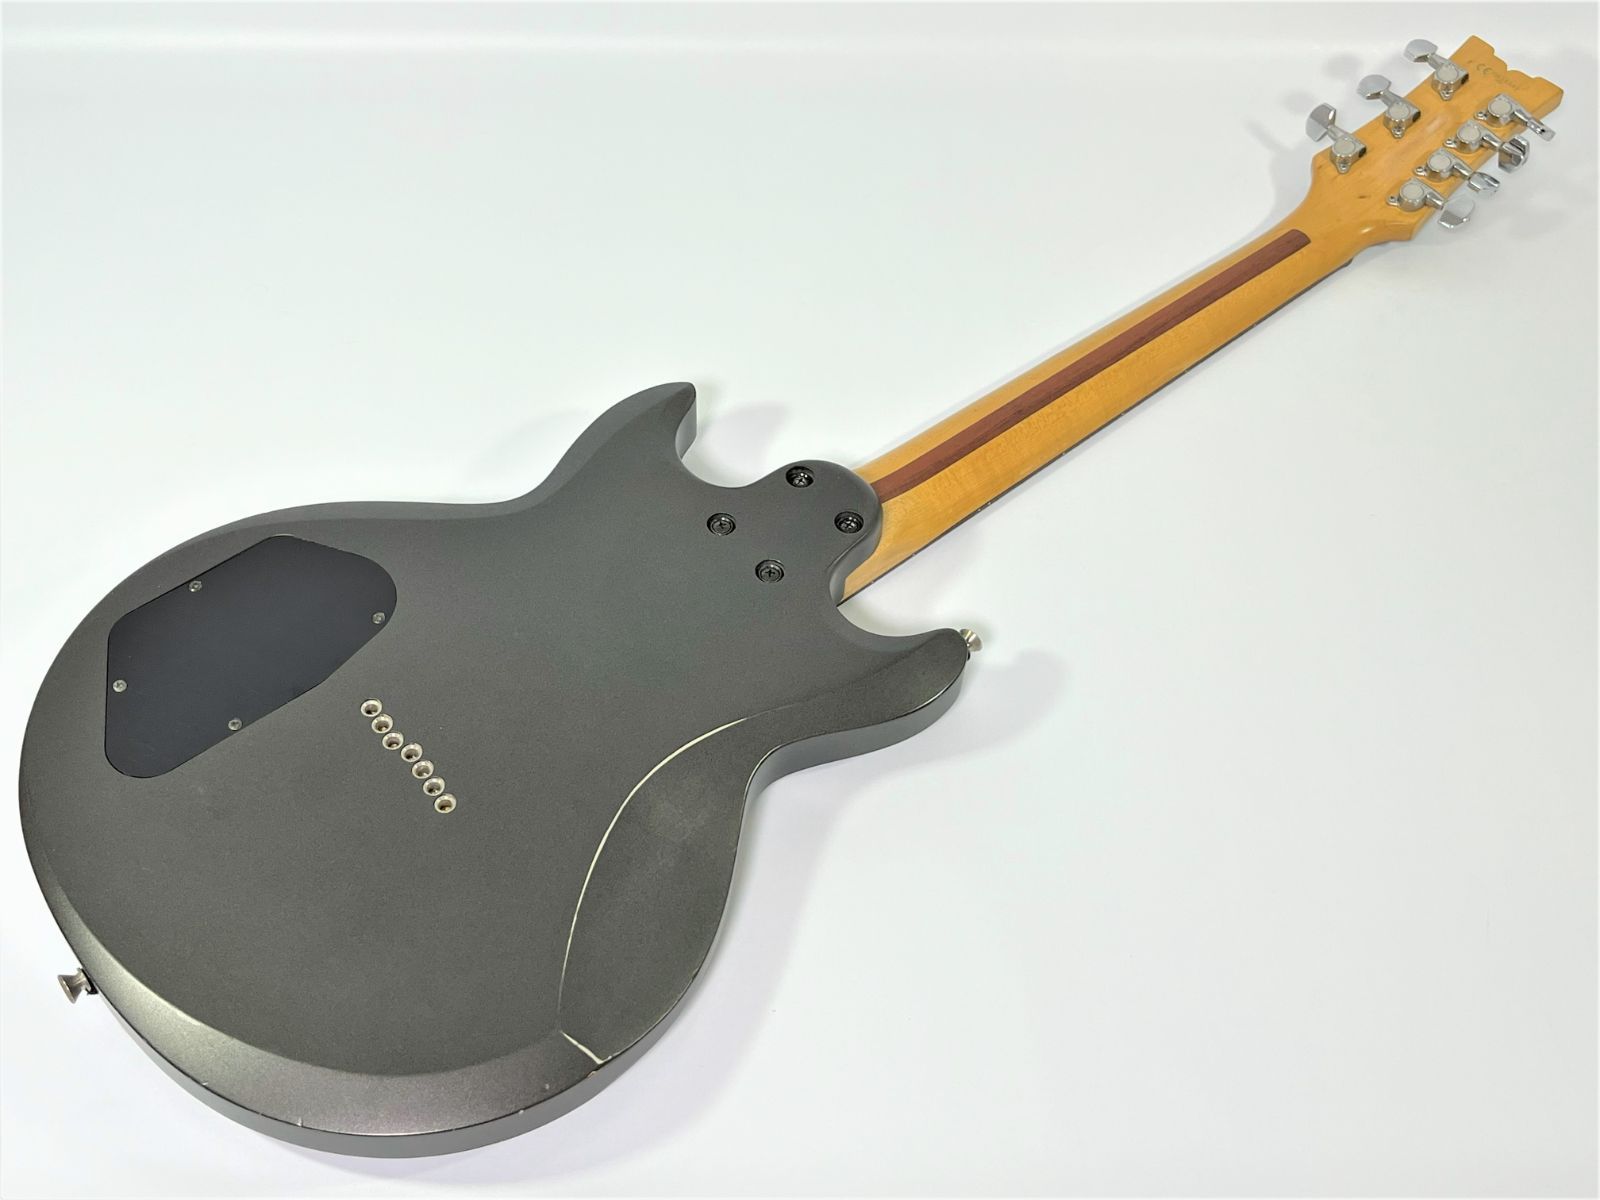 13,500円ibanez ax7521 7弦ギター